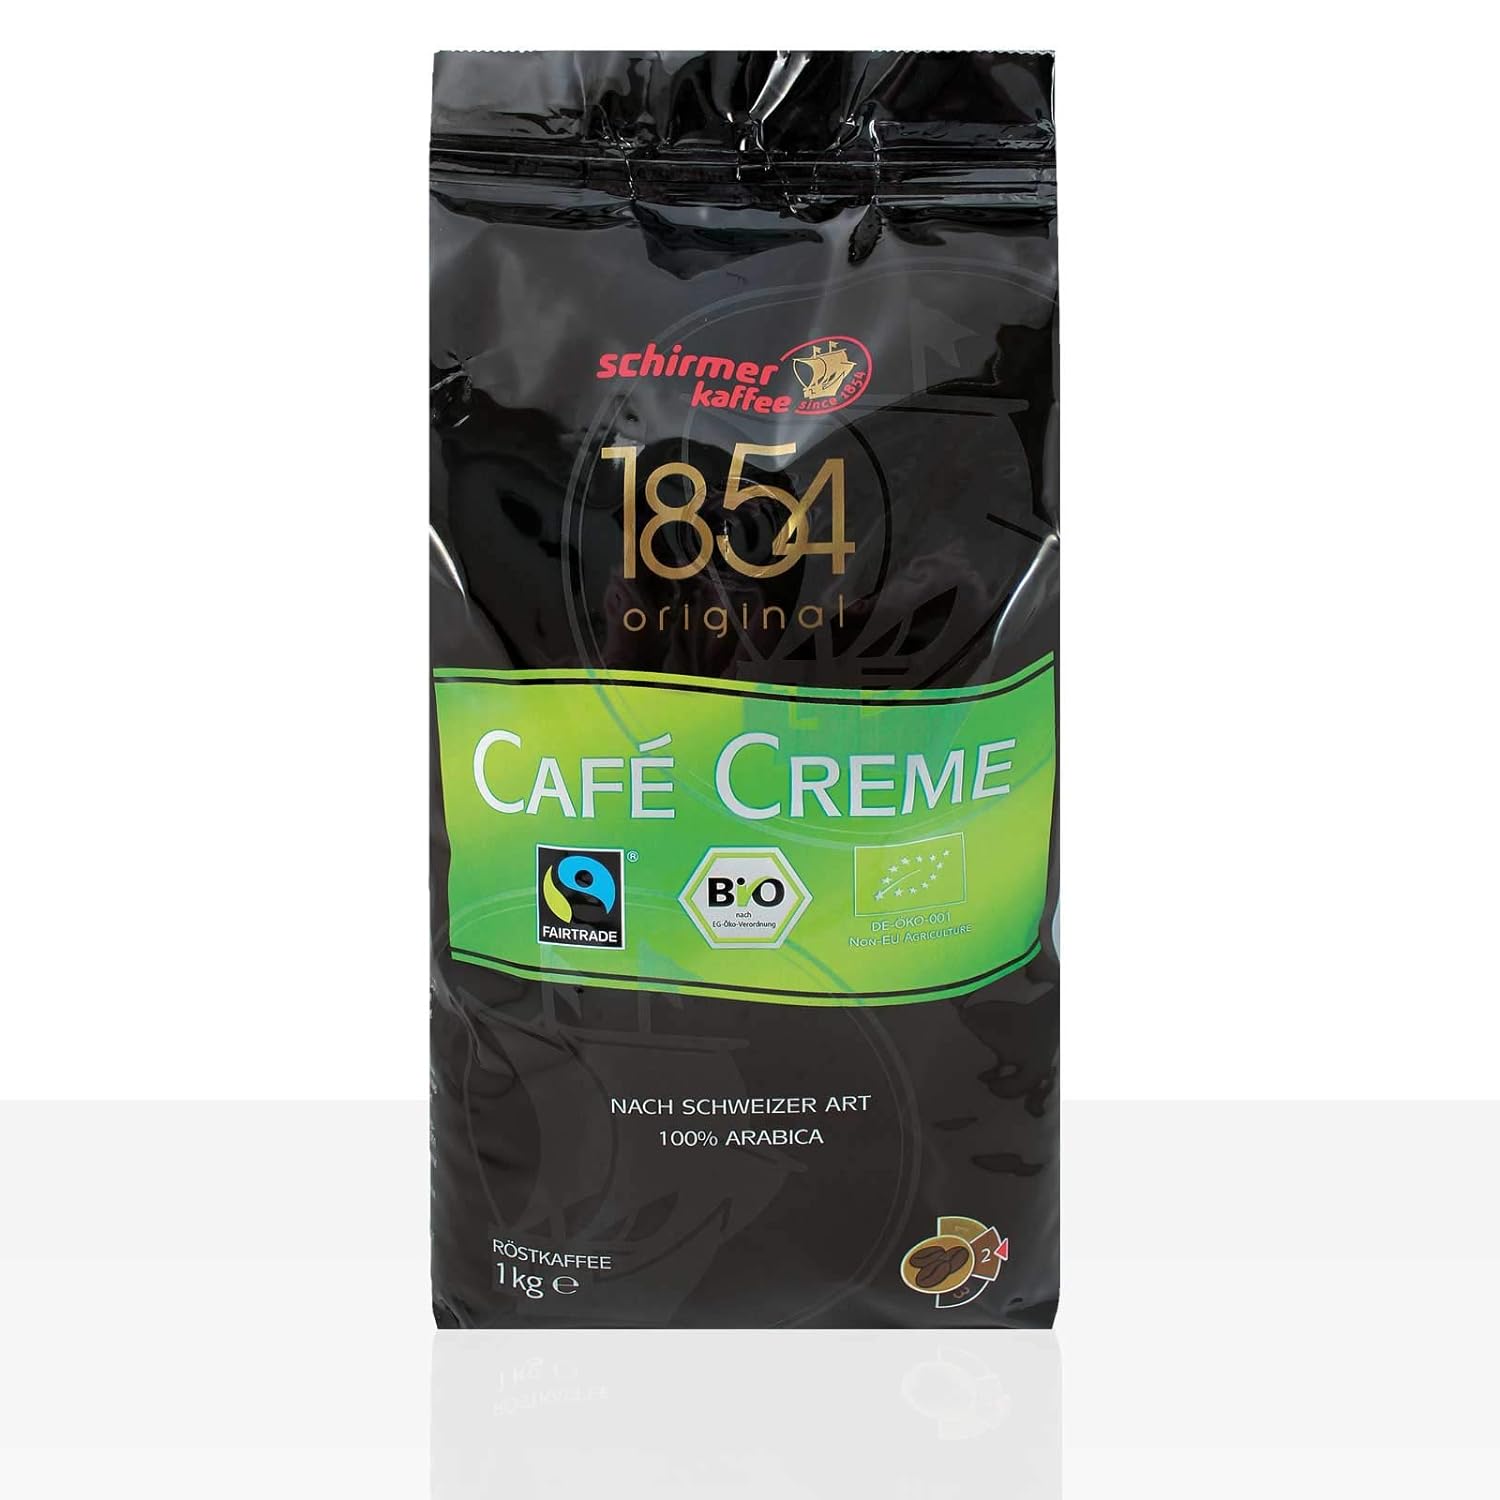 Schirmer 1854 Transfair Cafe Creme Bio Fairtrade - 1kg coffee bean, 100% Arabica